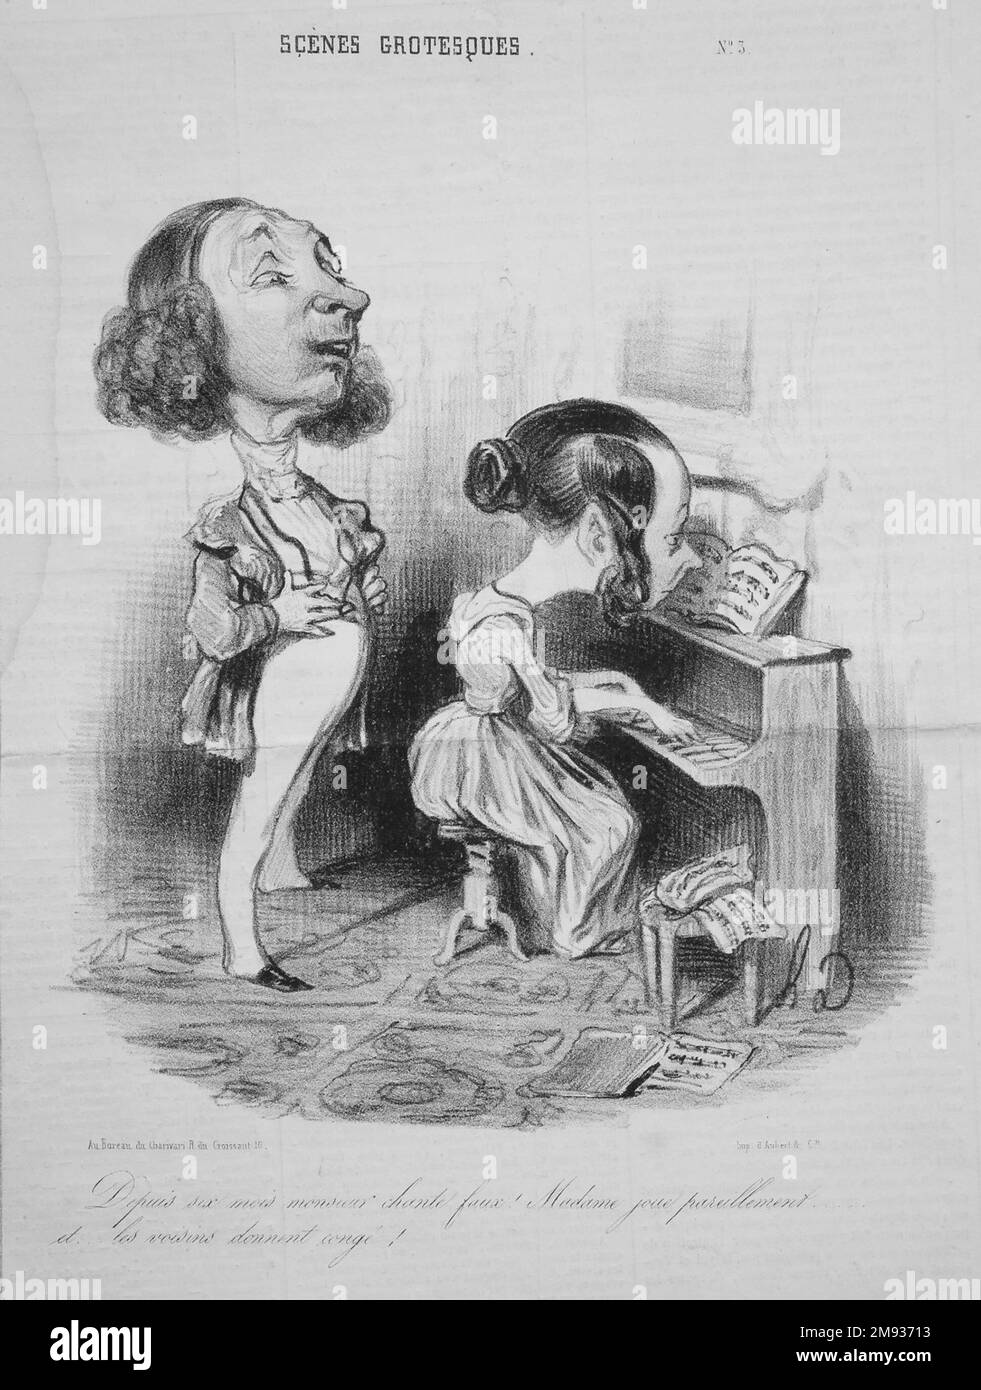 Monsieur a chanté hors de Tune depuis six mois...(depuis six mois monsieur chant fausse!...) Honoré Daumier (français, 1808-1879). , 24 juillet 1839. Lithographie sur papier journal, 11 3/16 x 8 7/16 po. (28,4 x 21,4 cm). 24 juillet 1839 européen d'art Banque D'Images